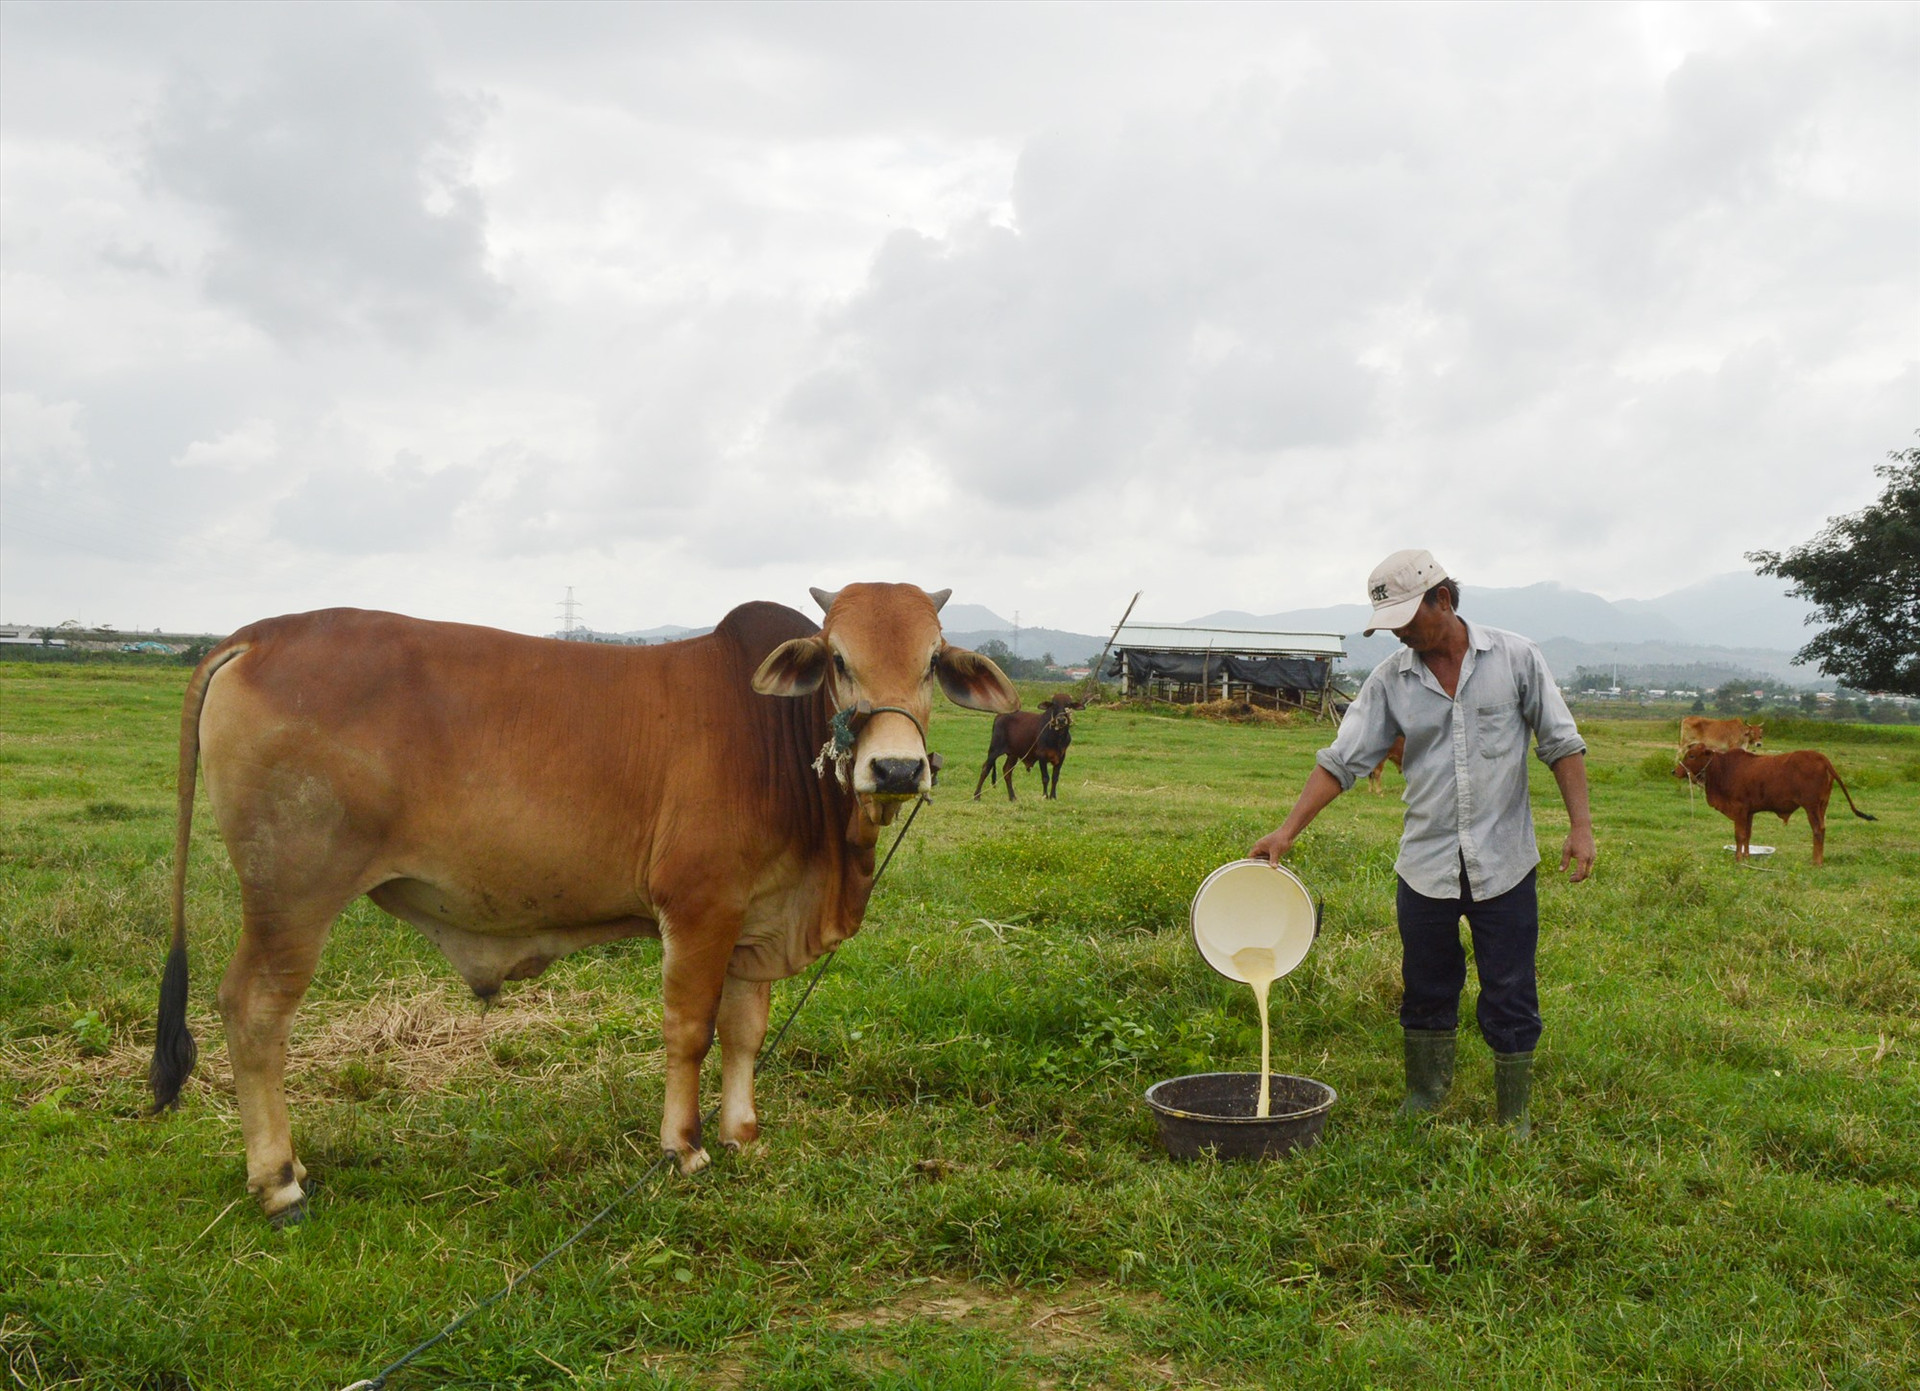 Mô hình chăn nuôi, sản xuất tập trung ở Điện Bàn được kỳ vọng mang lại hiệu quả kinh tế cao. Ảnh: G.K